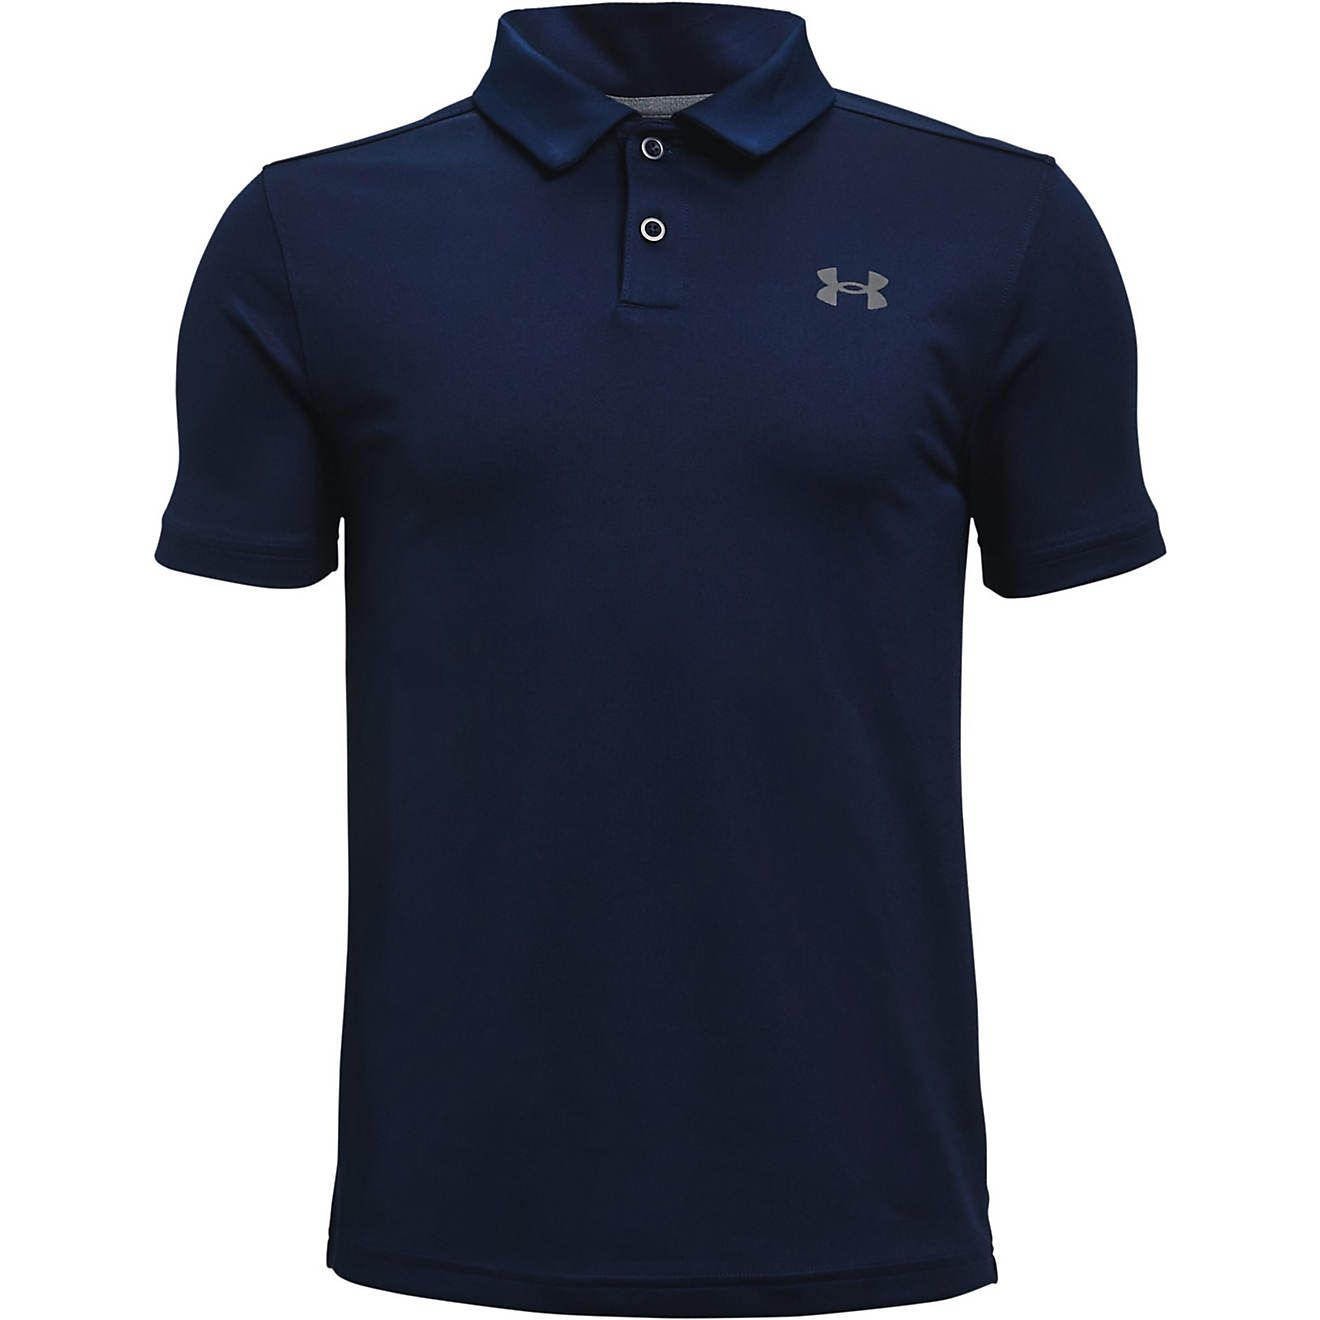 Under Armour Boys' Performance Golf Polo Shirt | Academy Sports + Outdoors